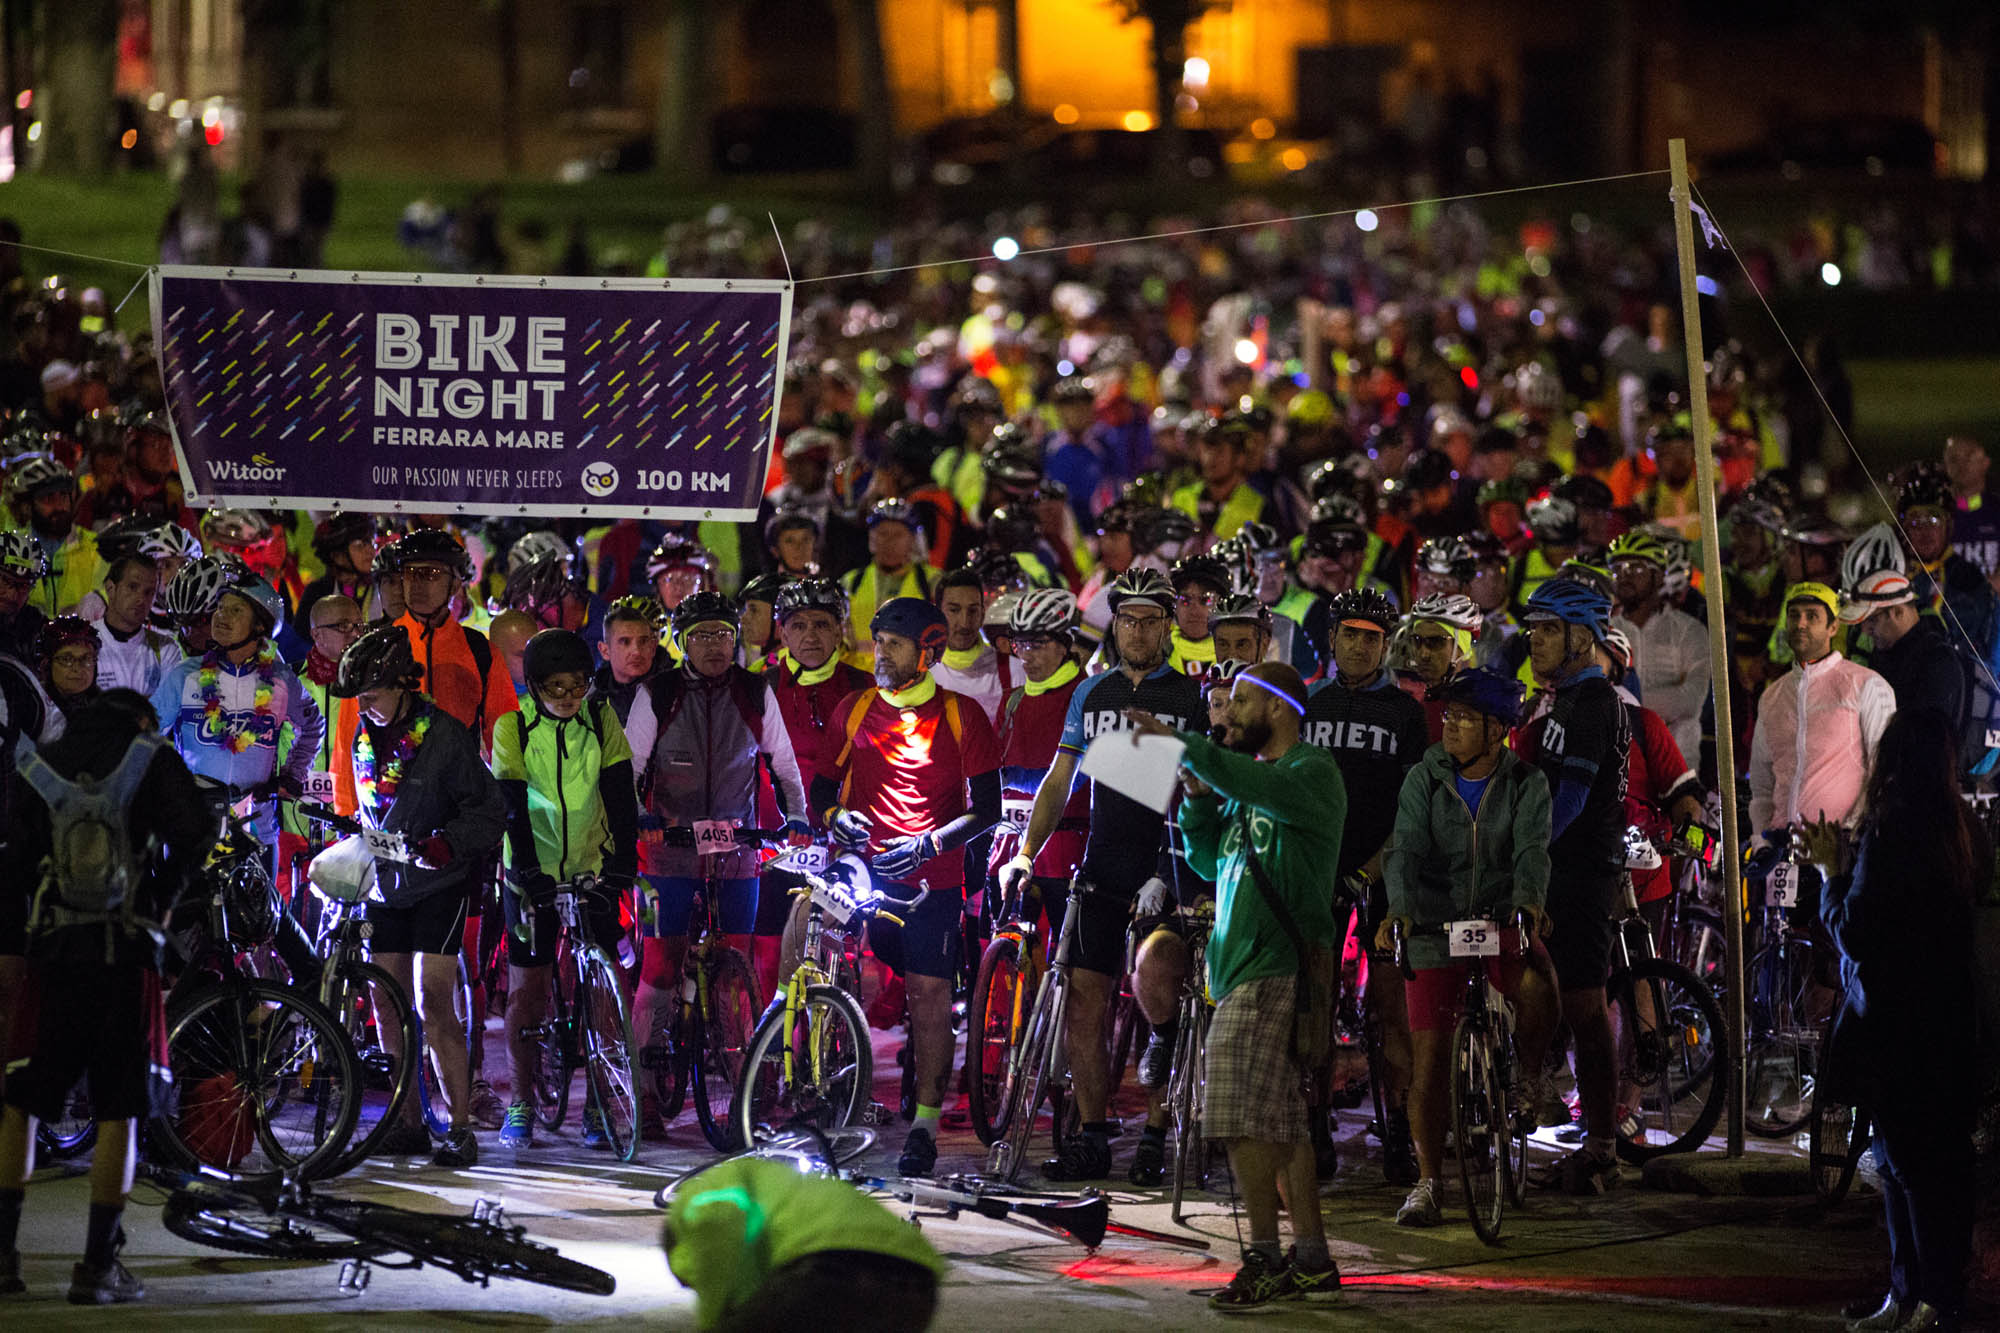 Bike Night illumina ancora la notte: da Ferrara al mare 1500 ciclisti sulla Destra Po, grazie a Witoor e Città della Cultura/Cultura della Città